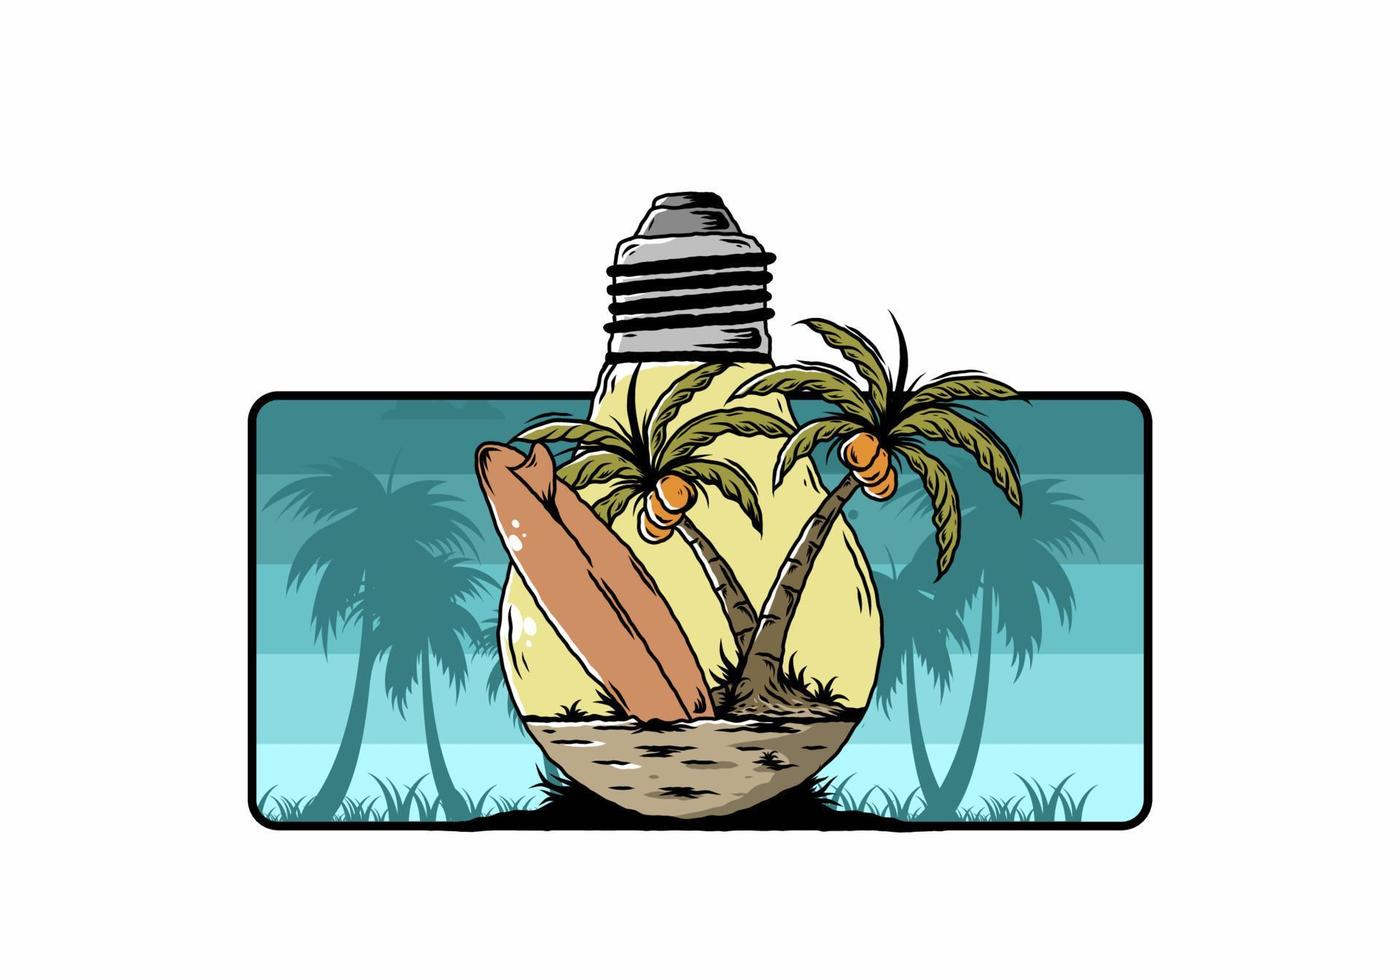 kokospalm en surfplank in een gloeilamp illustratie vector